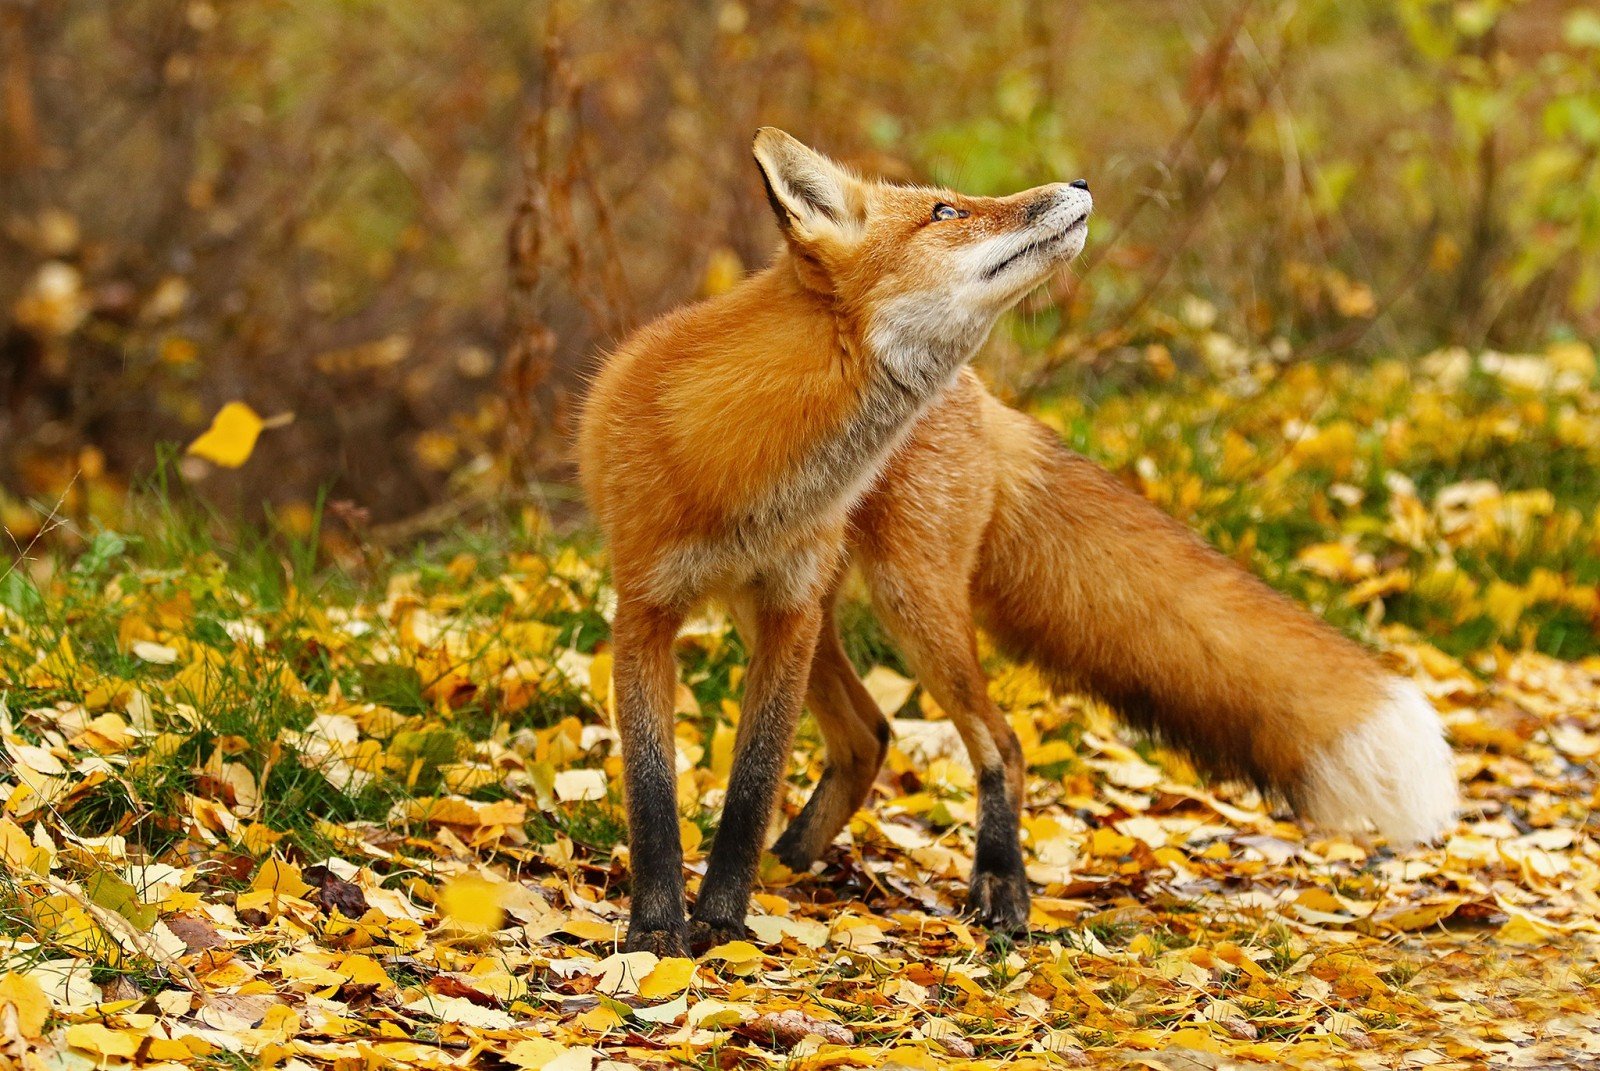 Лисица – описание и виды, фото с названиями, как выглядит и где обитает лиса